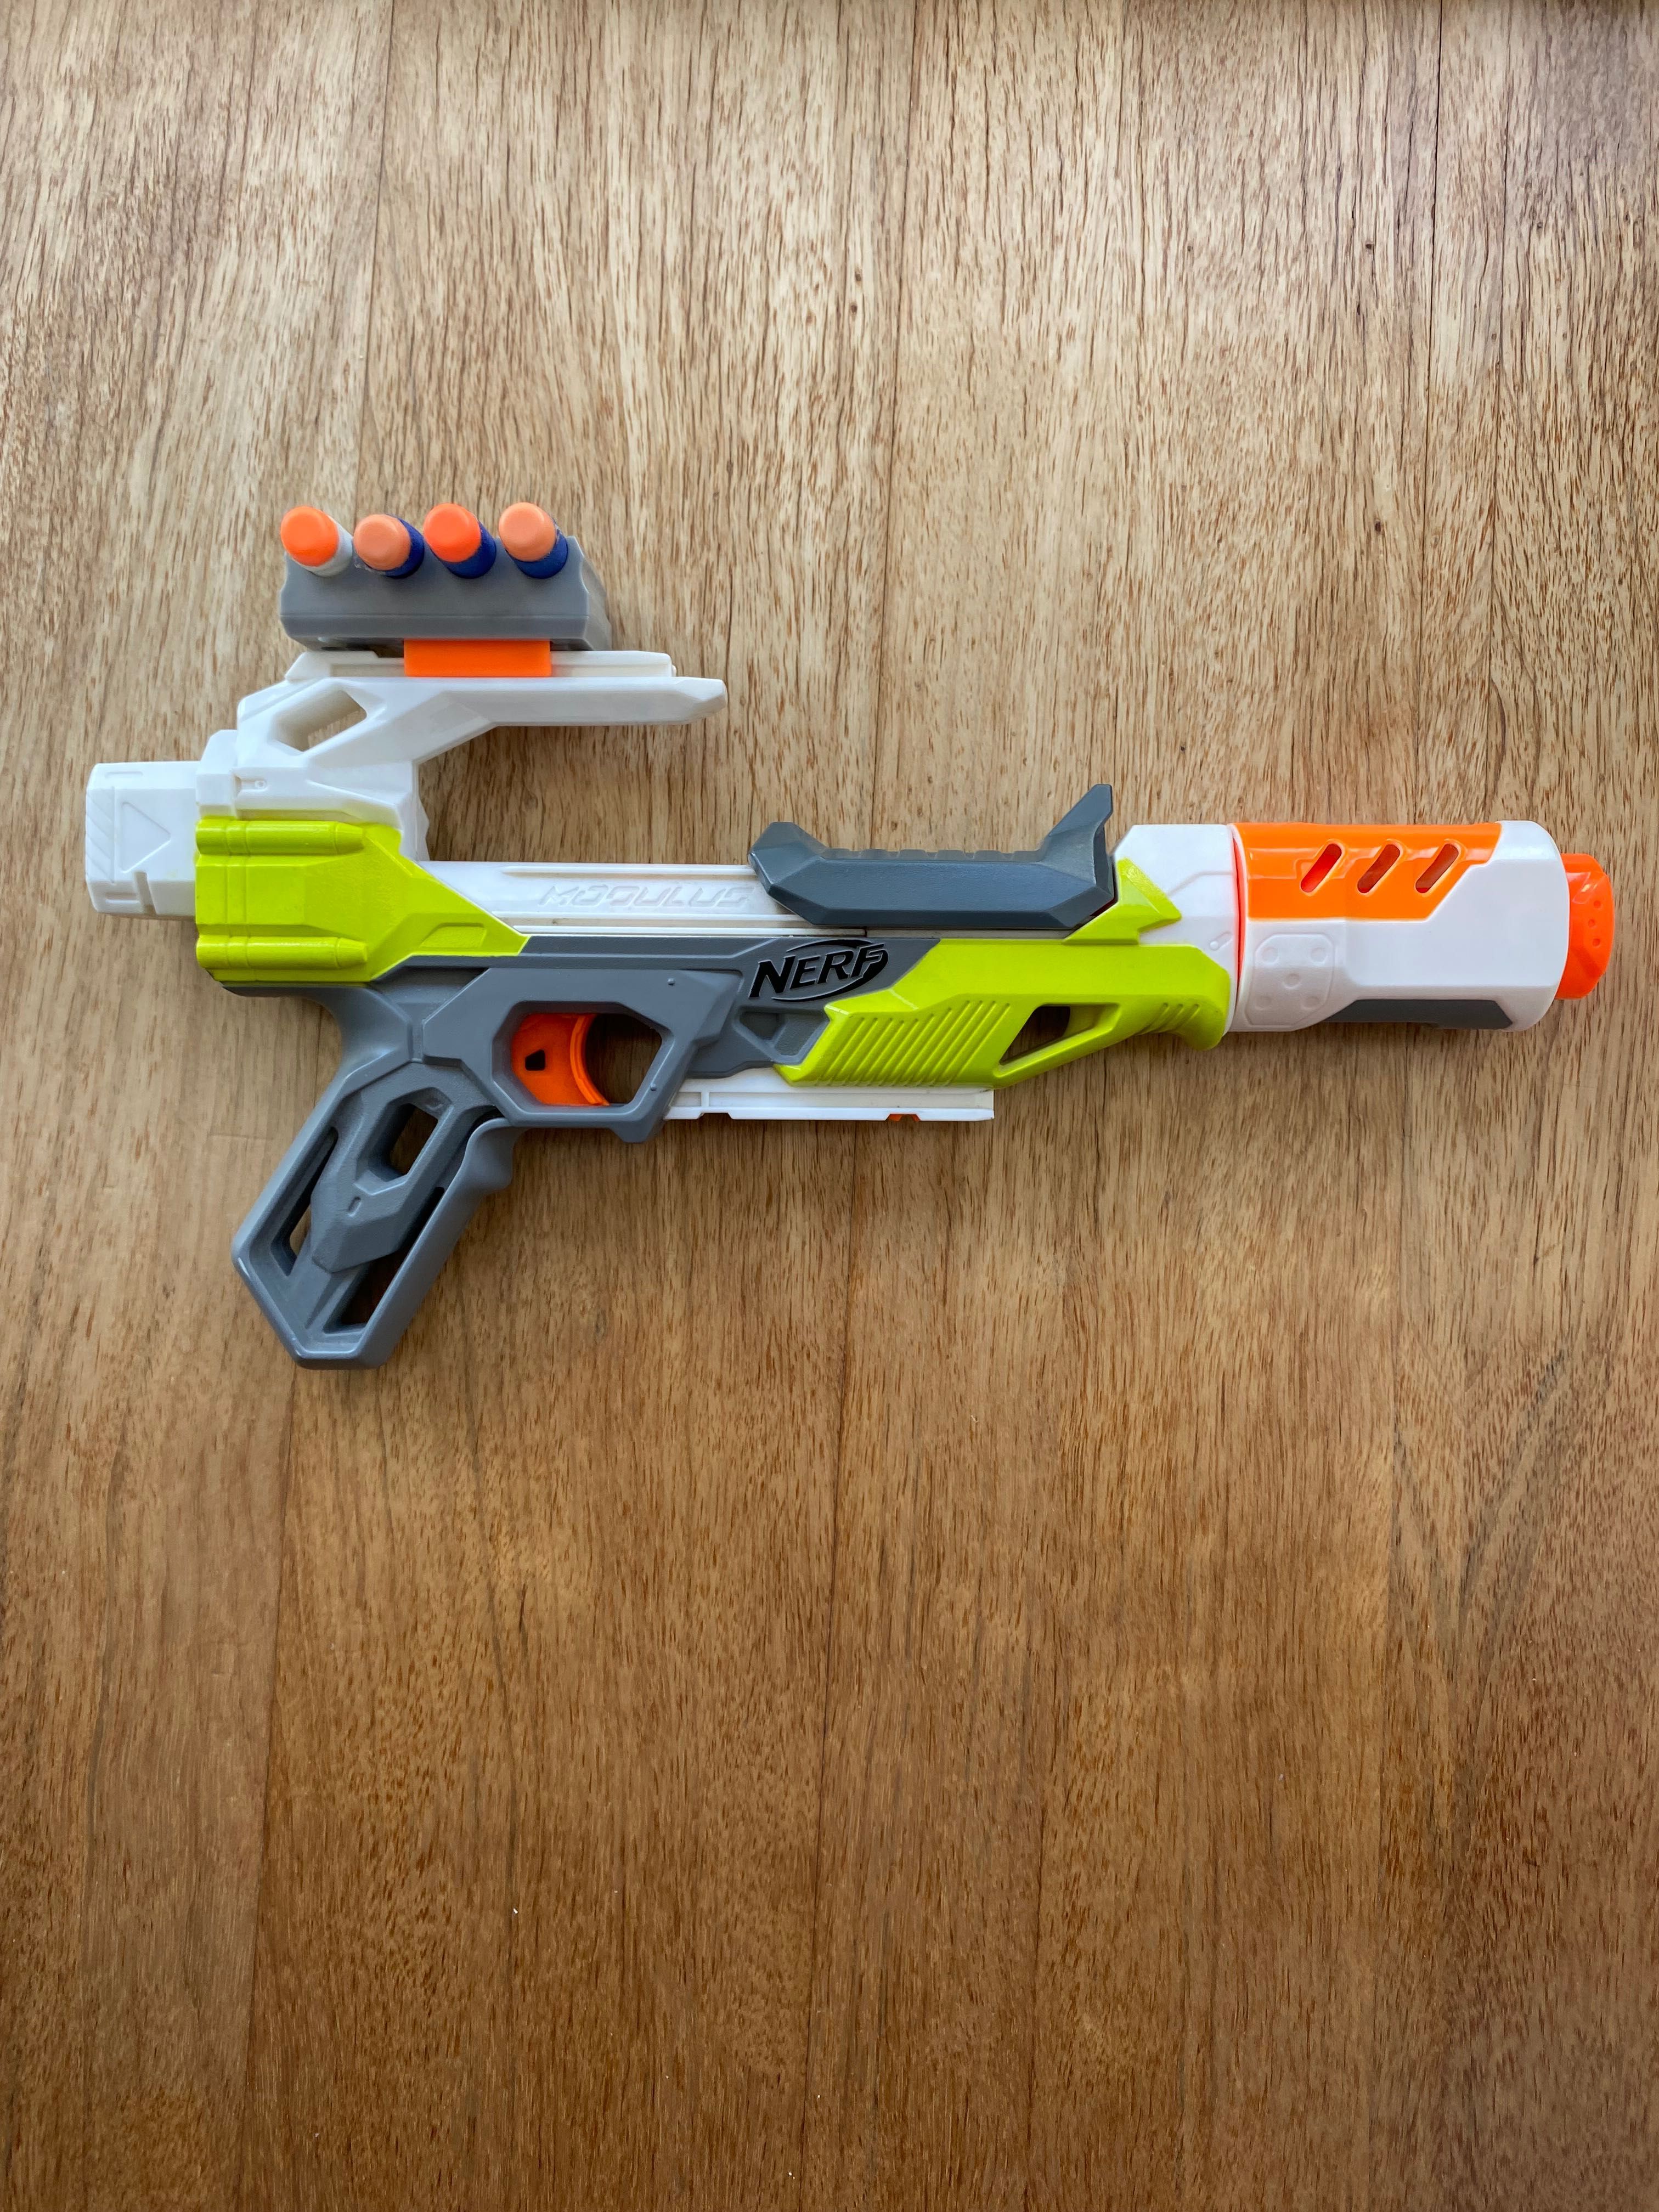 Pistola Nerf Nova